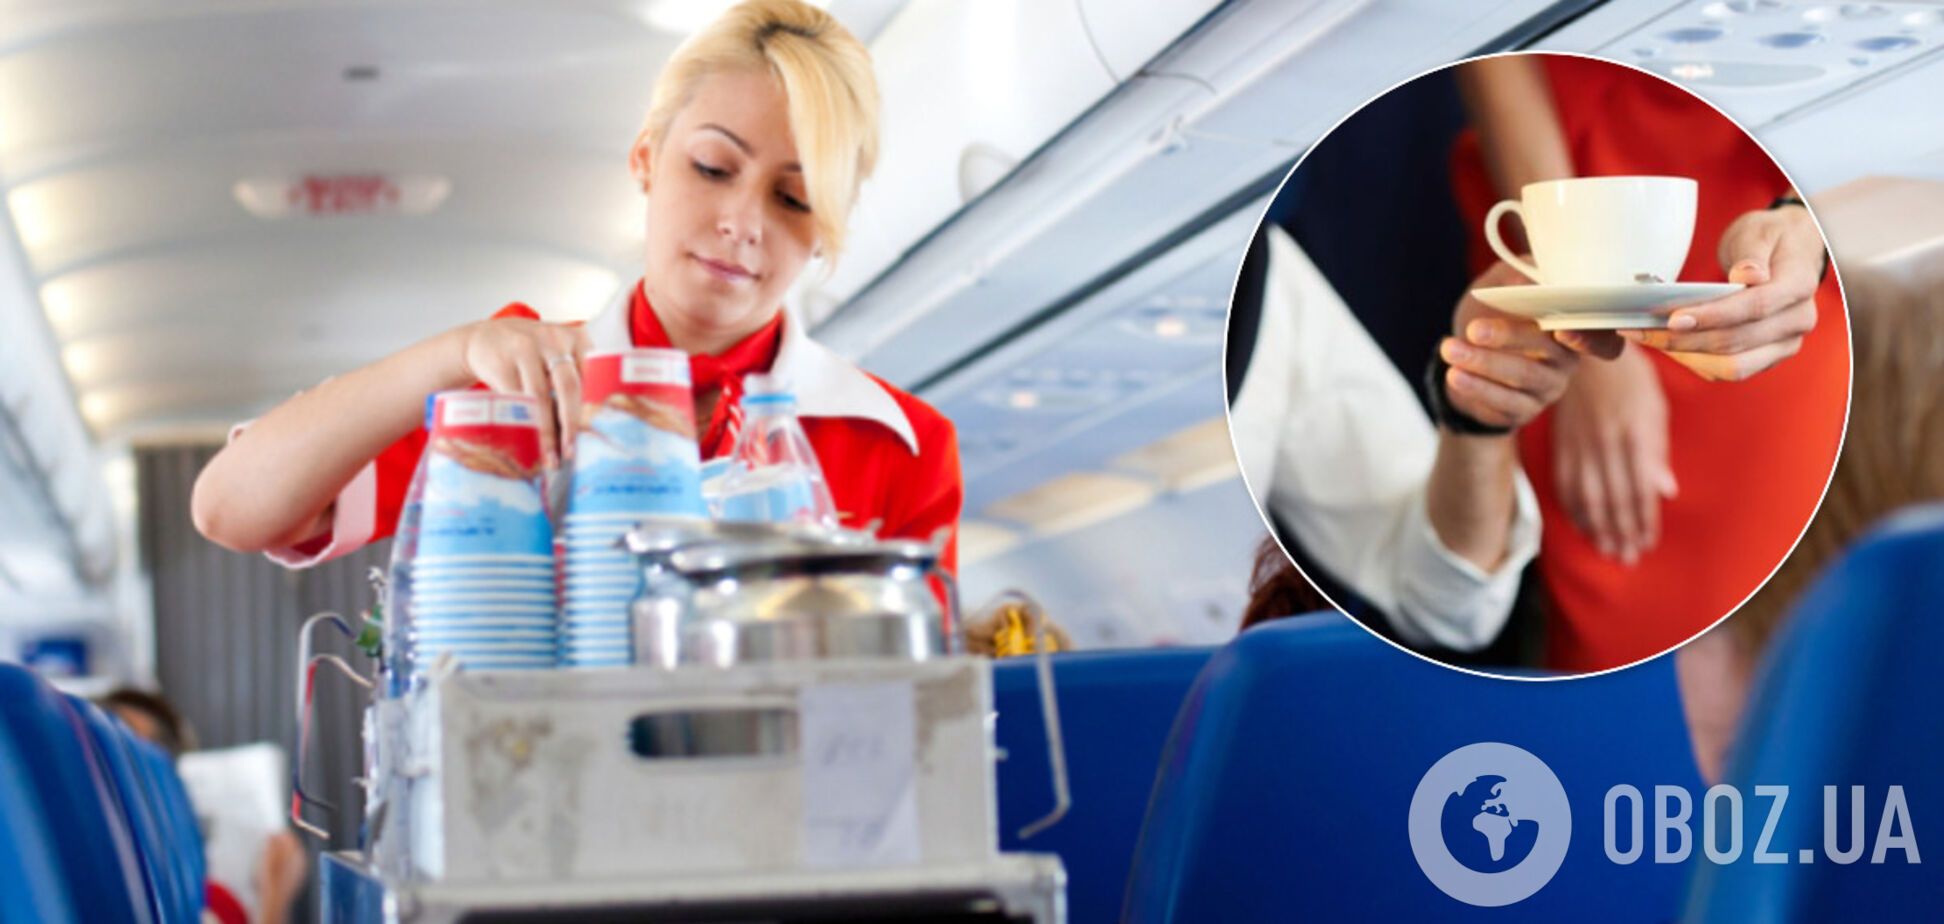 Краще не пити: стюардеса розкрила правду про каву та чай на борту літака